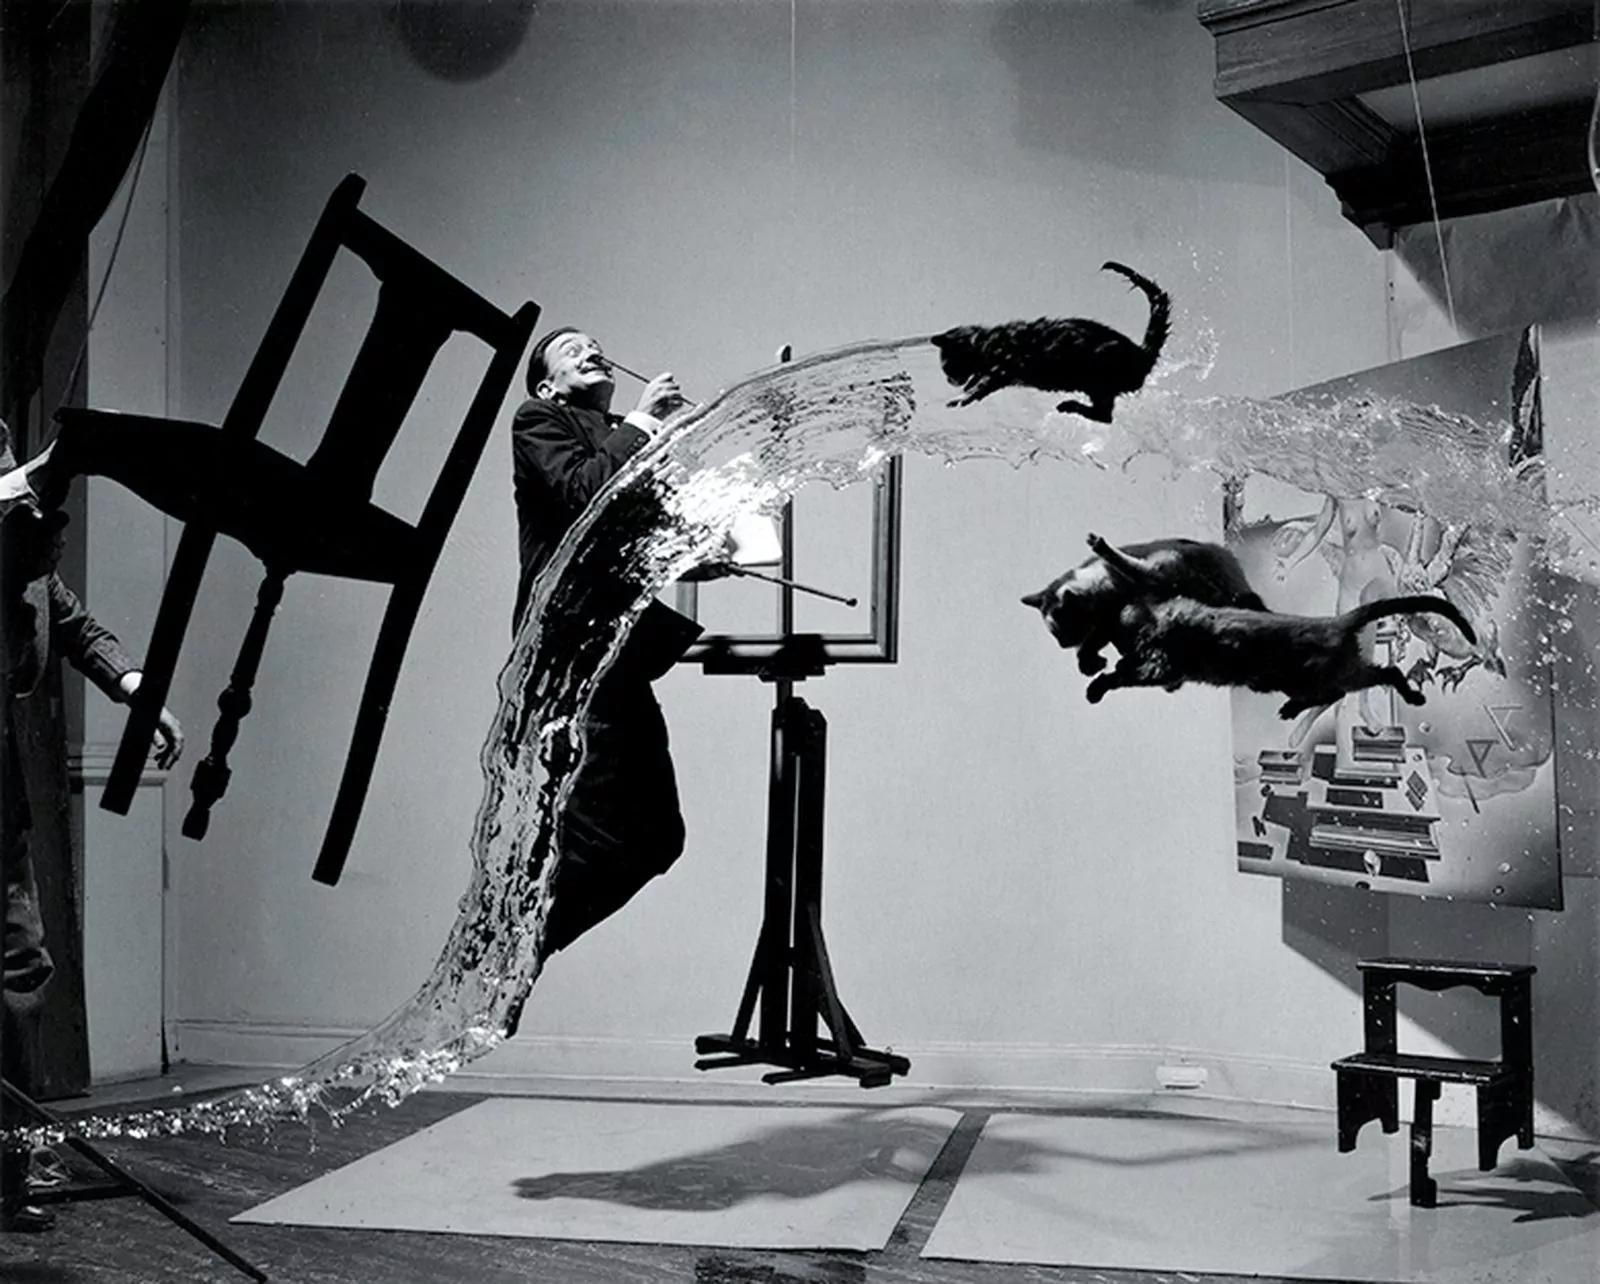 Dali Atomicus, фотограф Филиппе Халсман (Philippe Halsman), 1948 г.